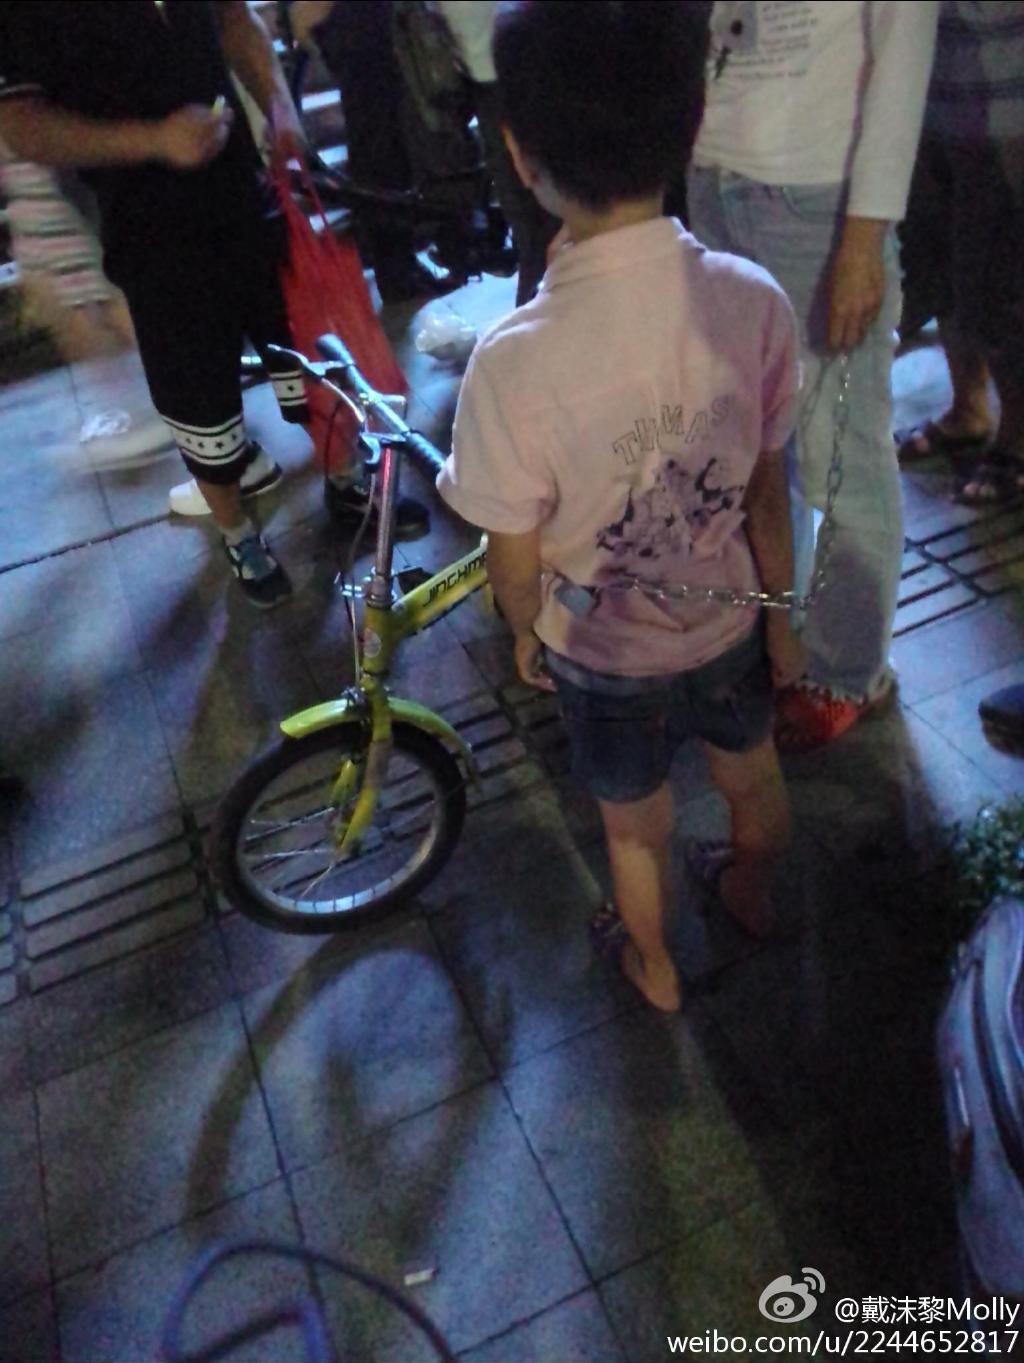 珠海骑车女子用铁链拖行一男孩 警方回应：两人为母子关系